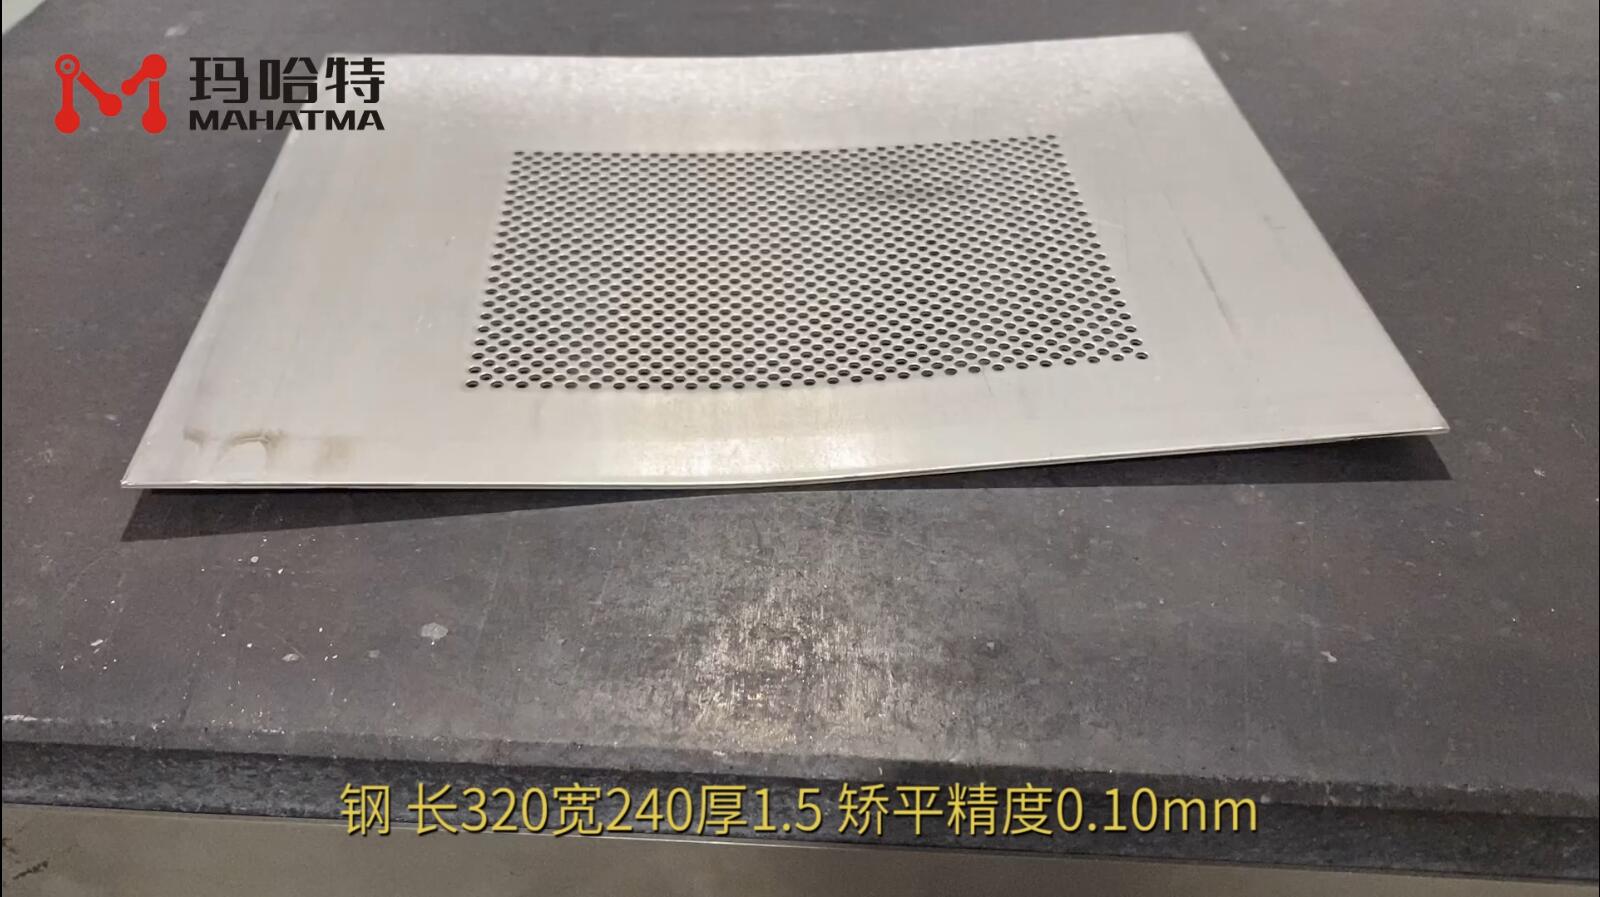 钢网板 MHT50-1300 长方形 长320宽240厚1.5 矫平精度0.10mm